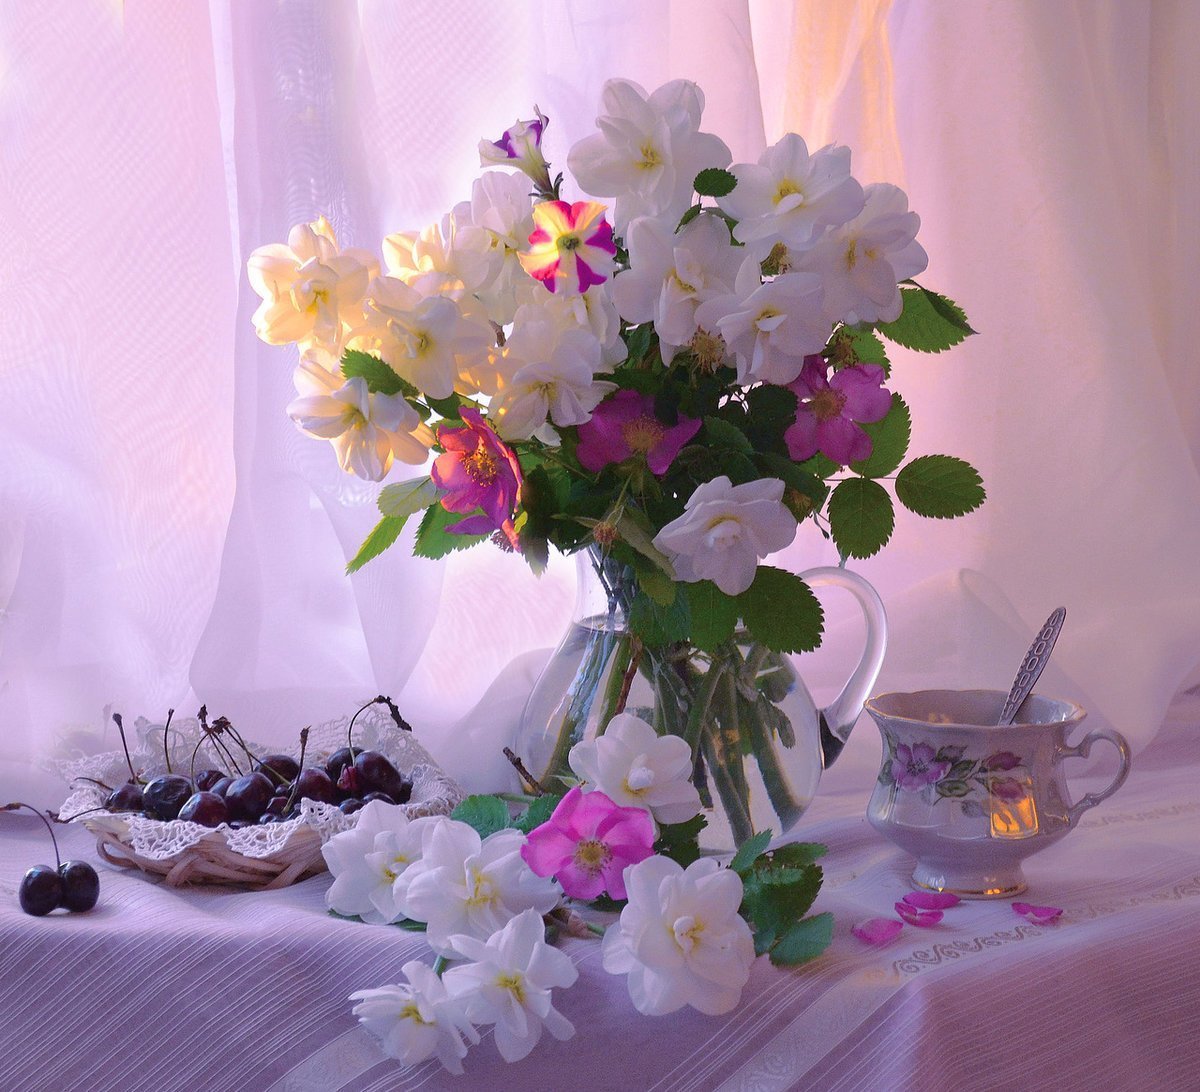 Картинка женщине с добрым утром весны. Утренние цветы. Красивые цветы в вазах. Доброе утро цветы. Утренний букет.